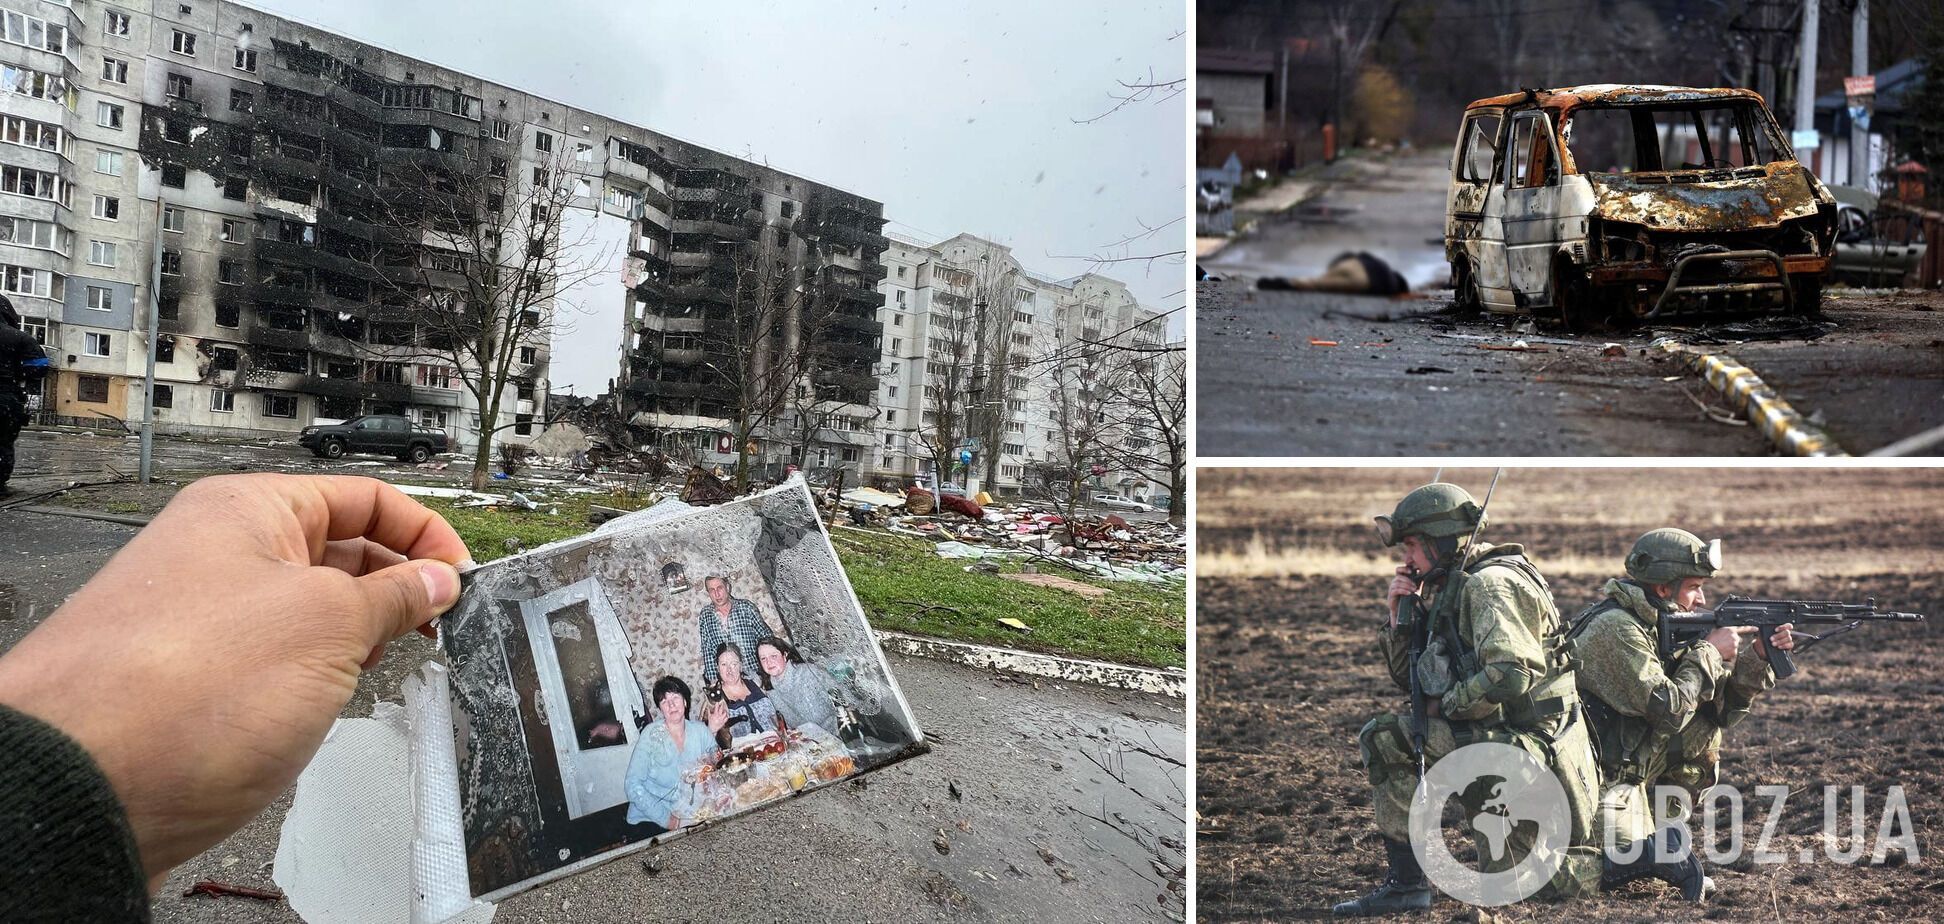 Аналітики назвали підрозділи військ РФ, які відзначилися особливою жорстокістю в Україні